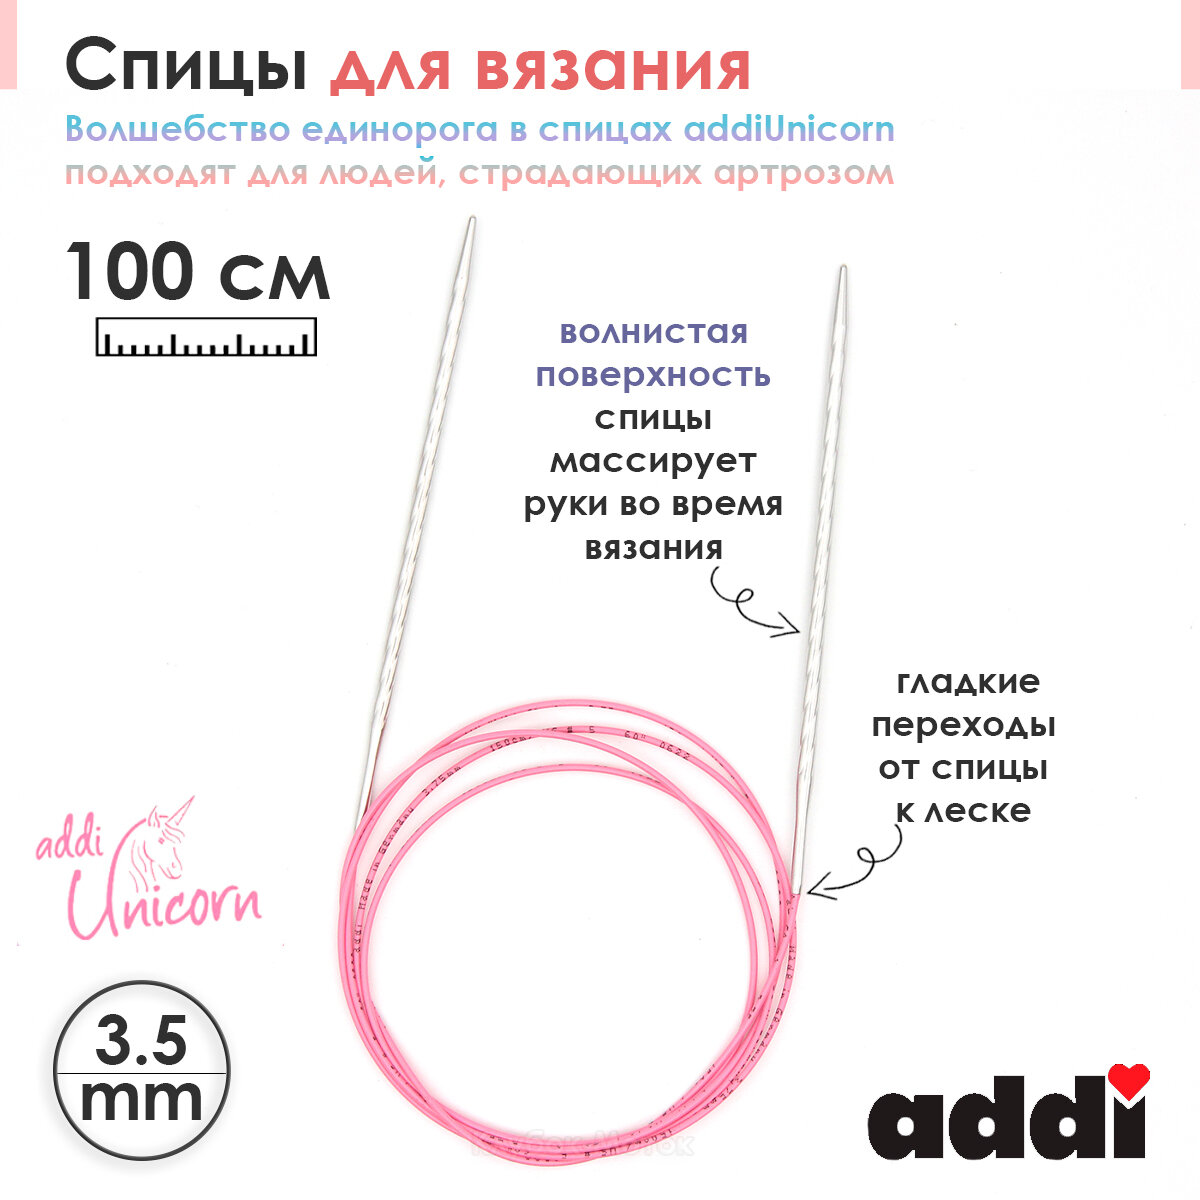 Спицы addi Unicorn 100 см, 3,5 мм, металлические круговые супергладкие 115-7/3,5-100